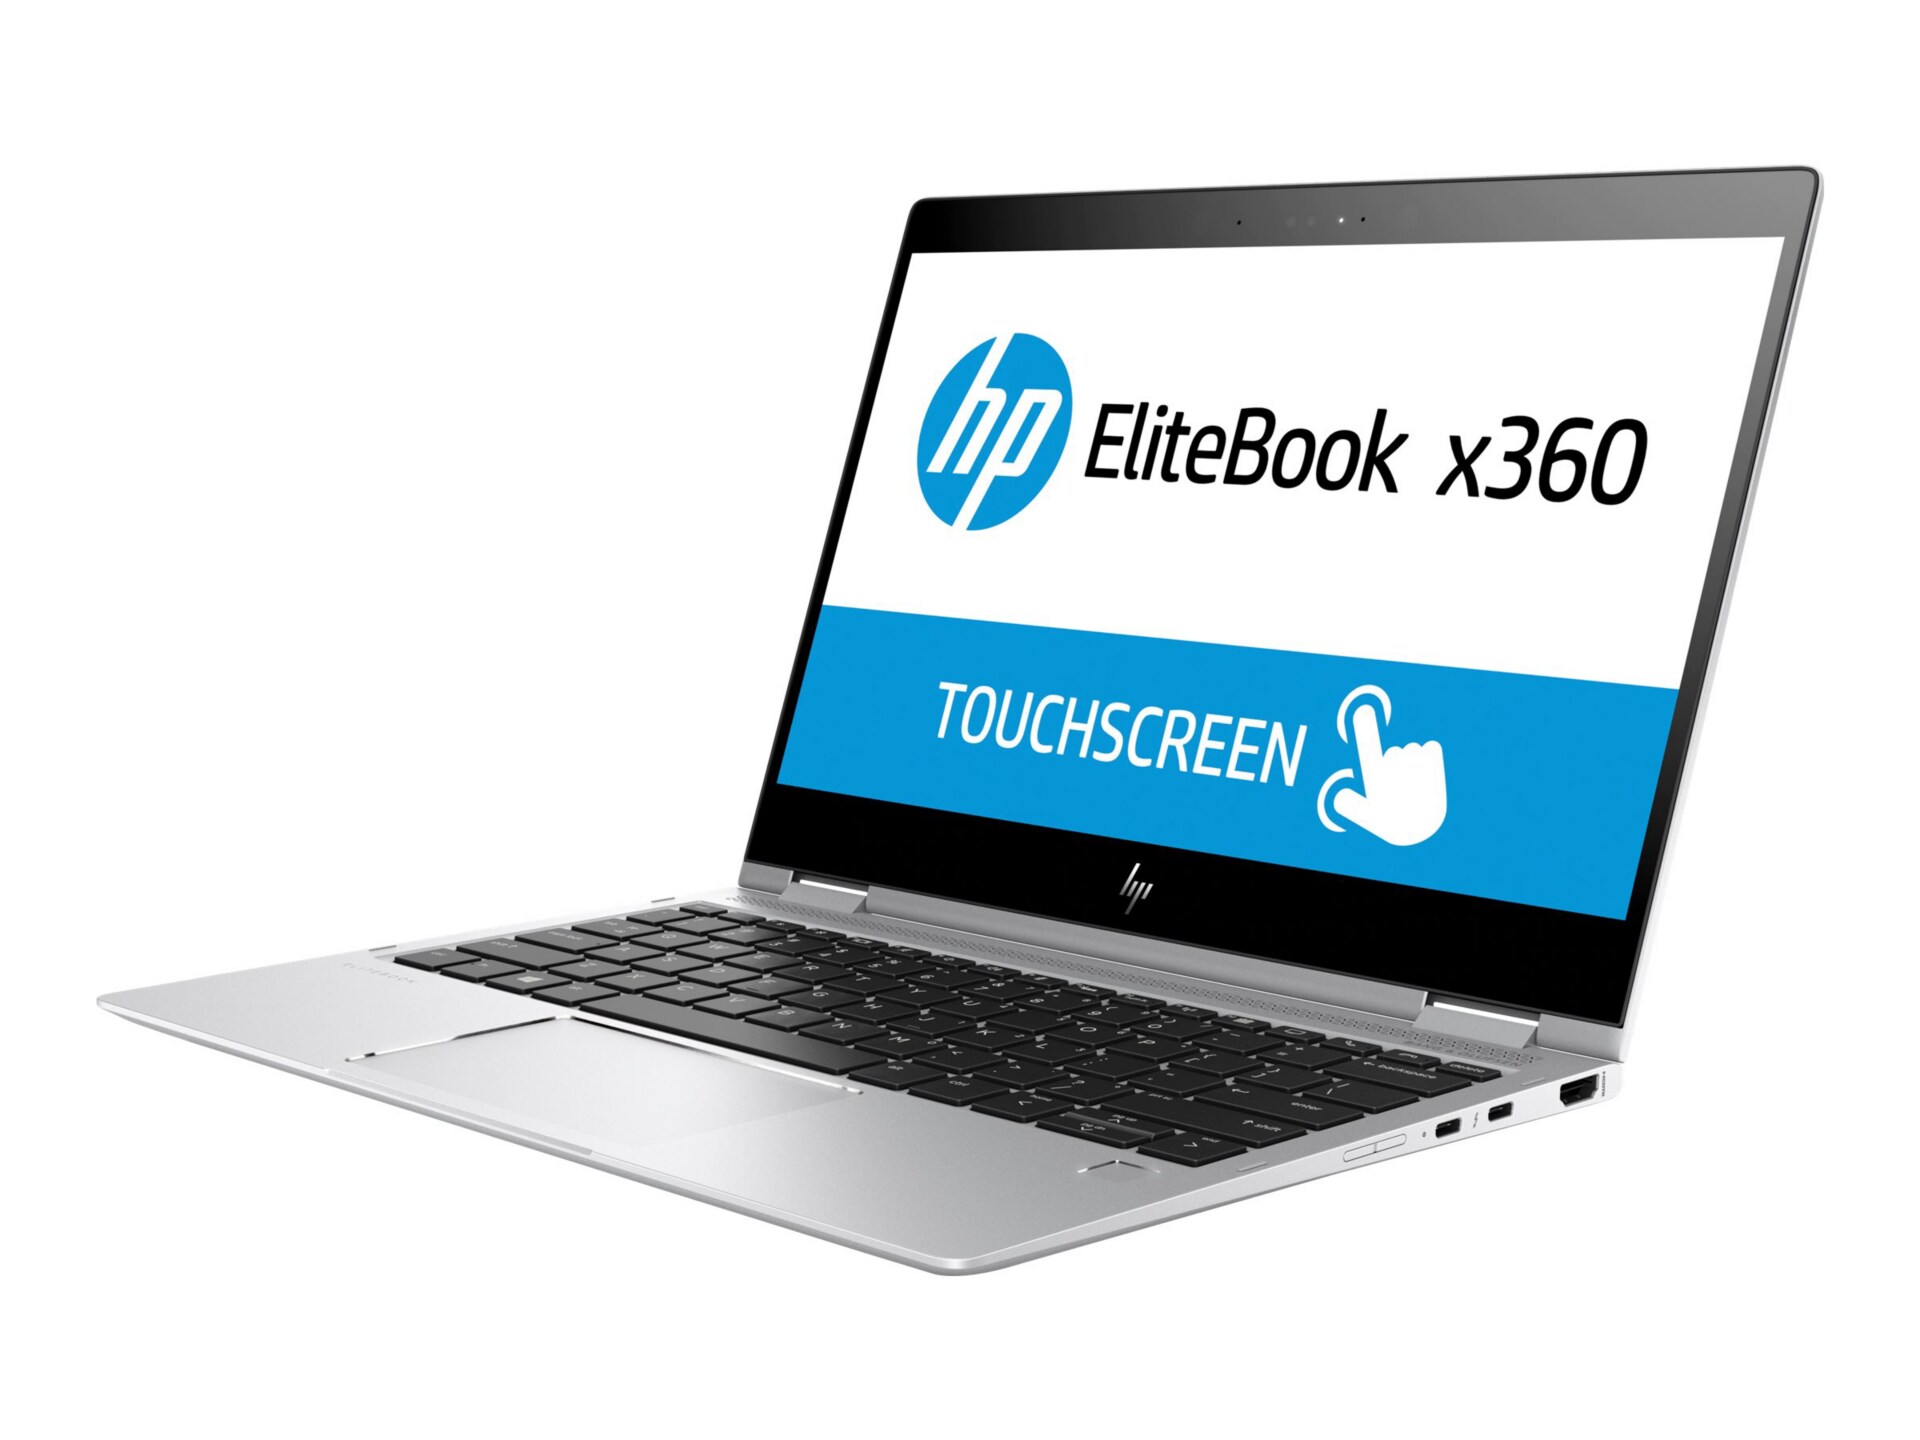 HP EliteBook x360 1020 G2 - 12.5" - Core i7 7600U - 8 GB RAM - 256 GB SSD - US